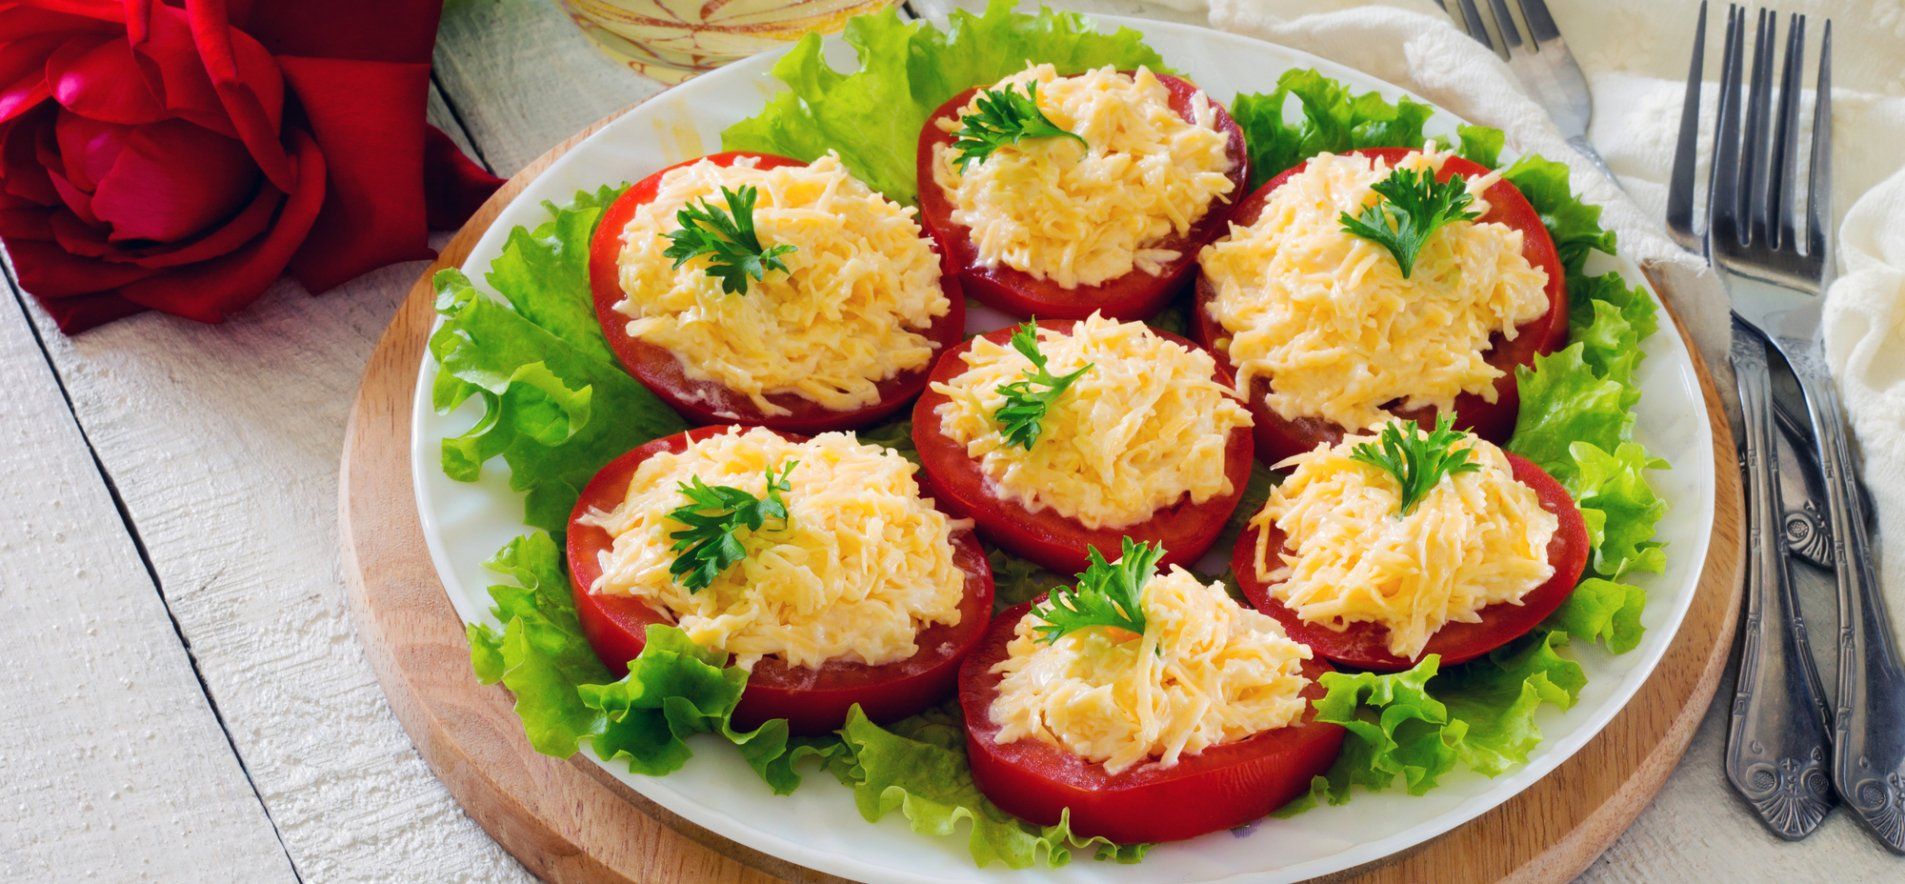 Закуска из помидоров и сыра - приготовьте быстро и просто - пошаговый рецепт - Новини Смачно